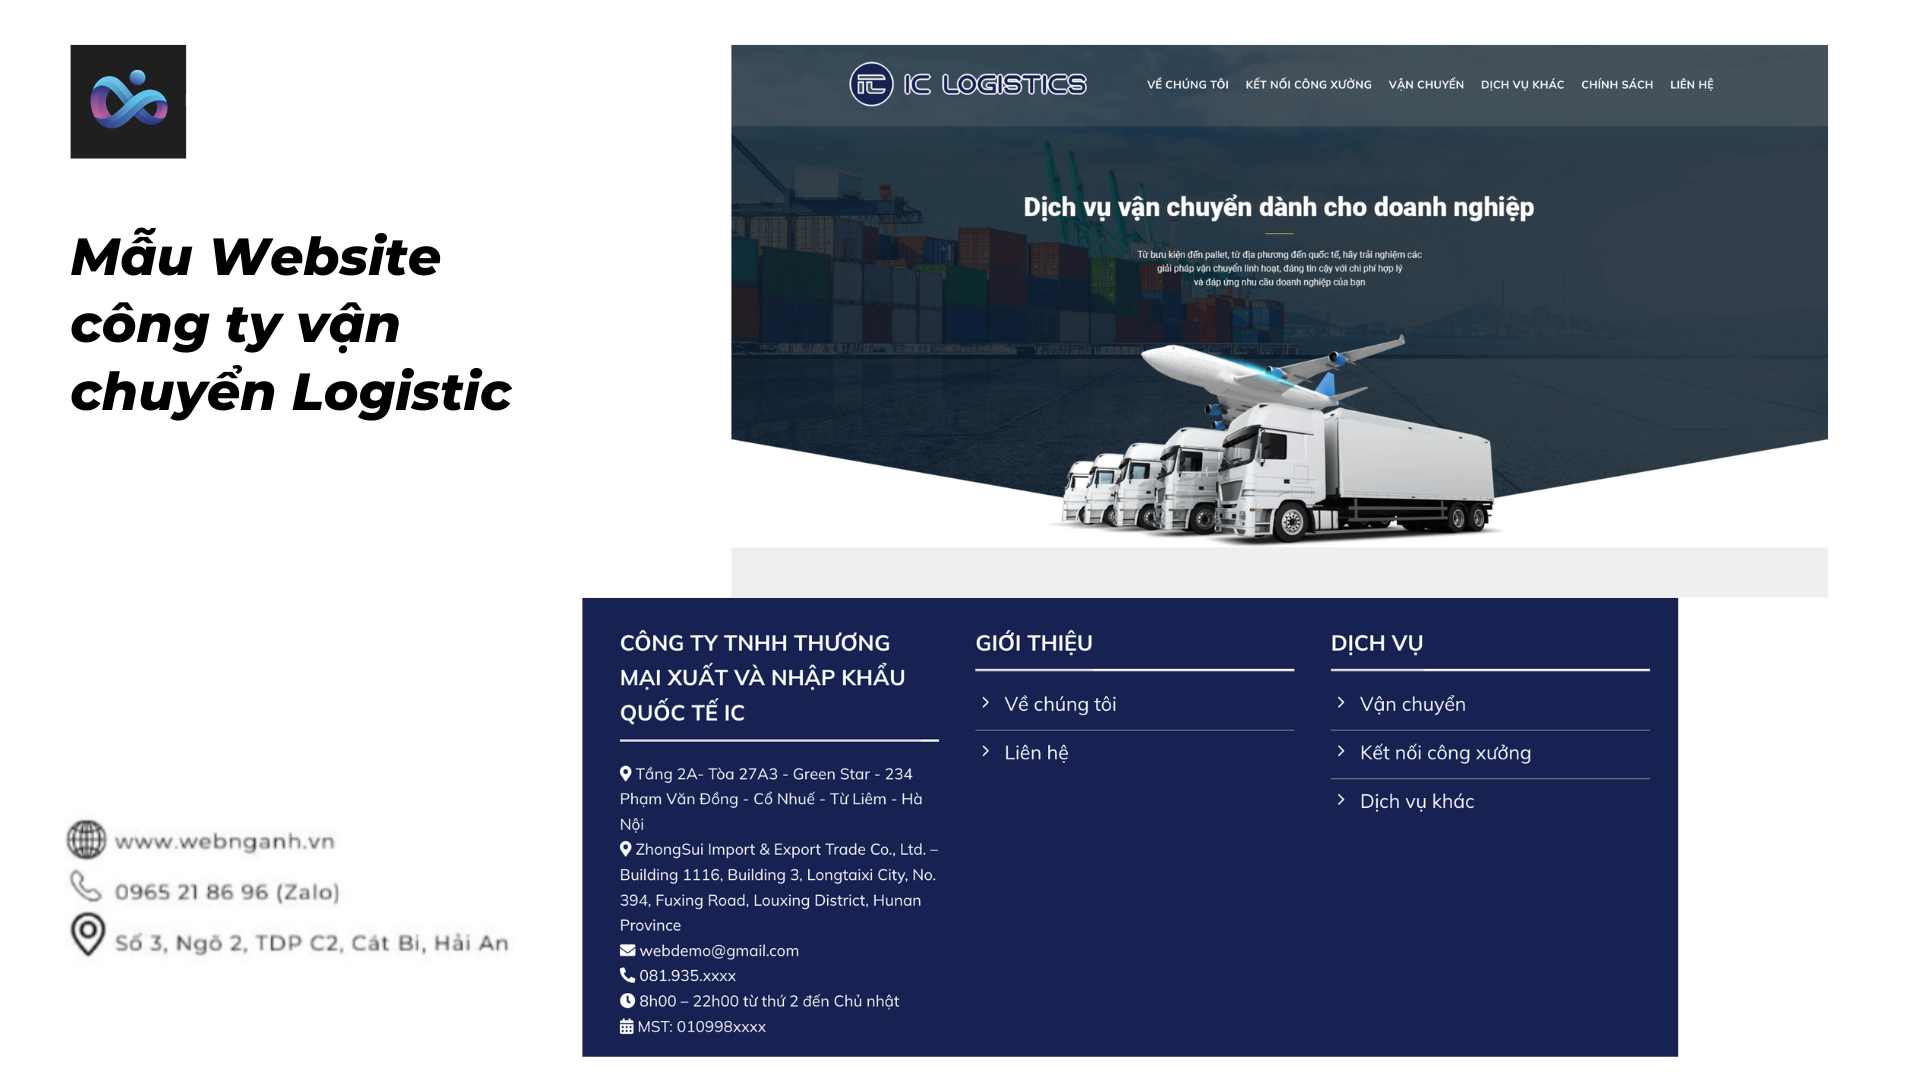 Mẫu Website công ty vận chuyển Logistic